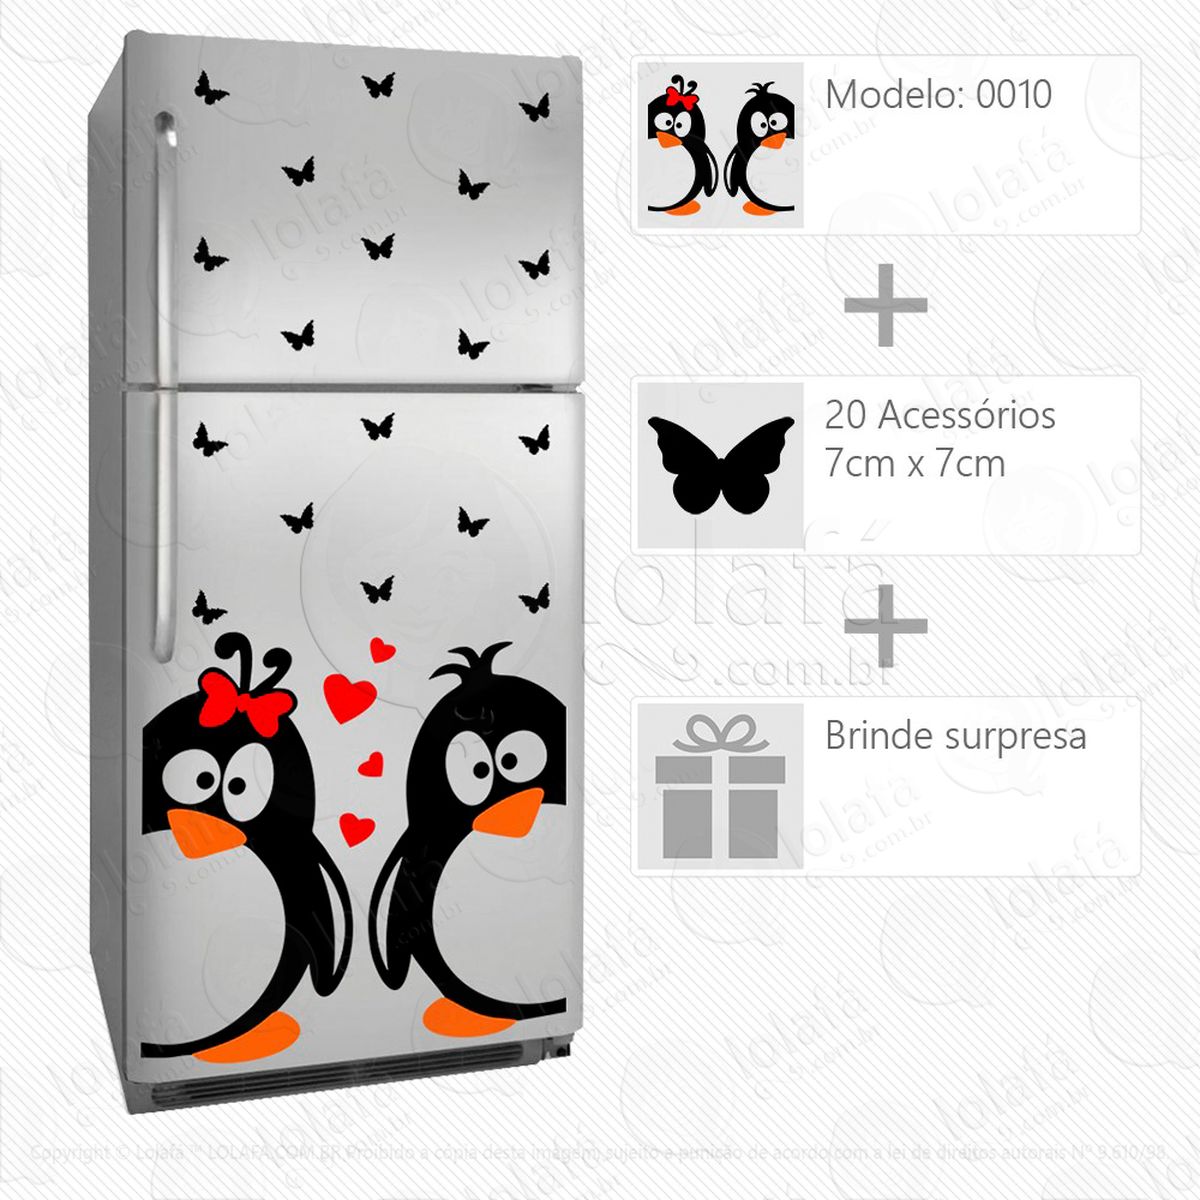 pinguins adesivo para geladeira e frigobar - mod:10